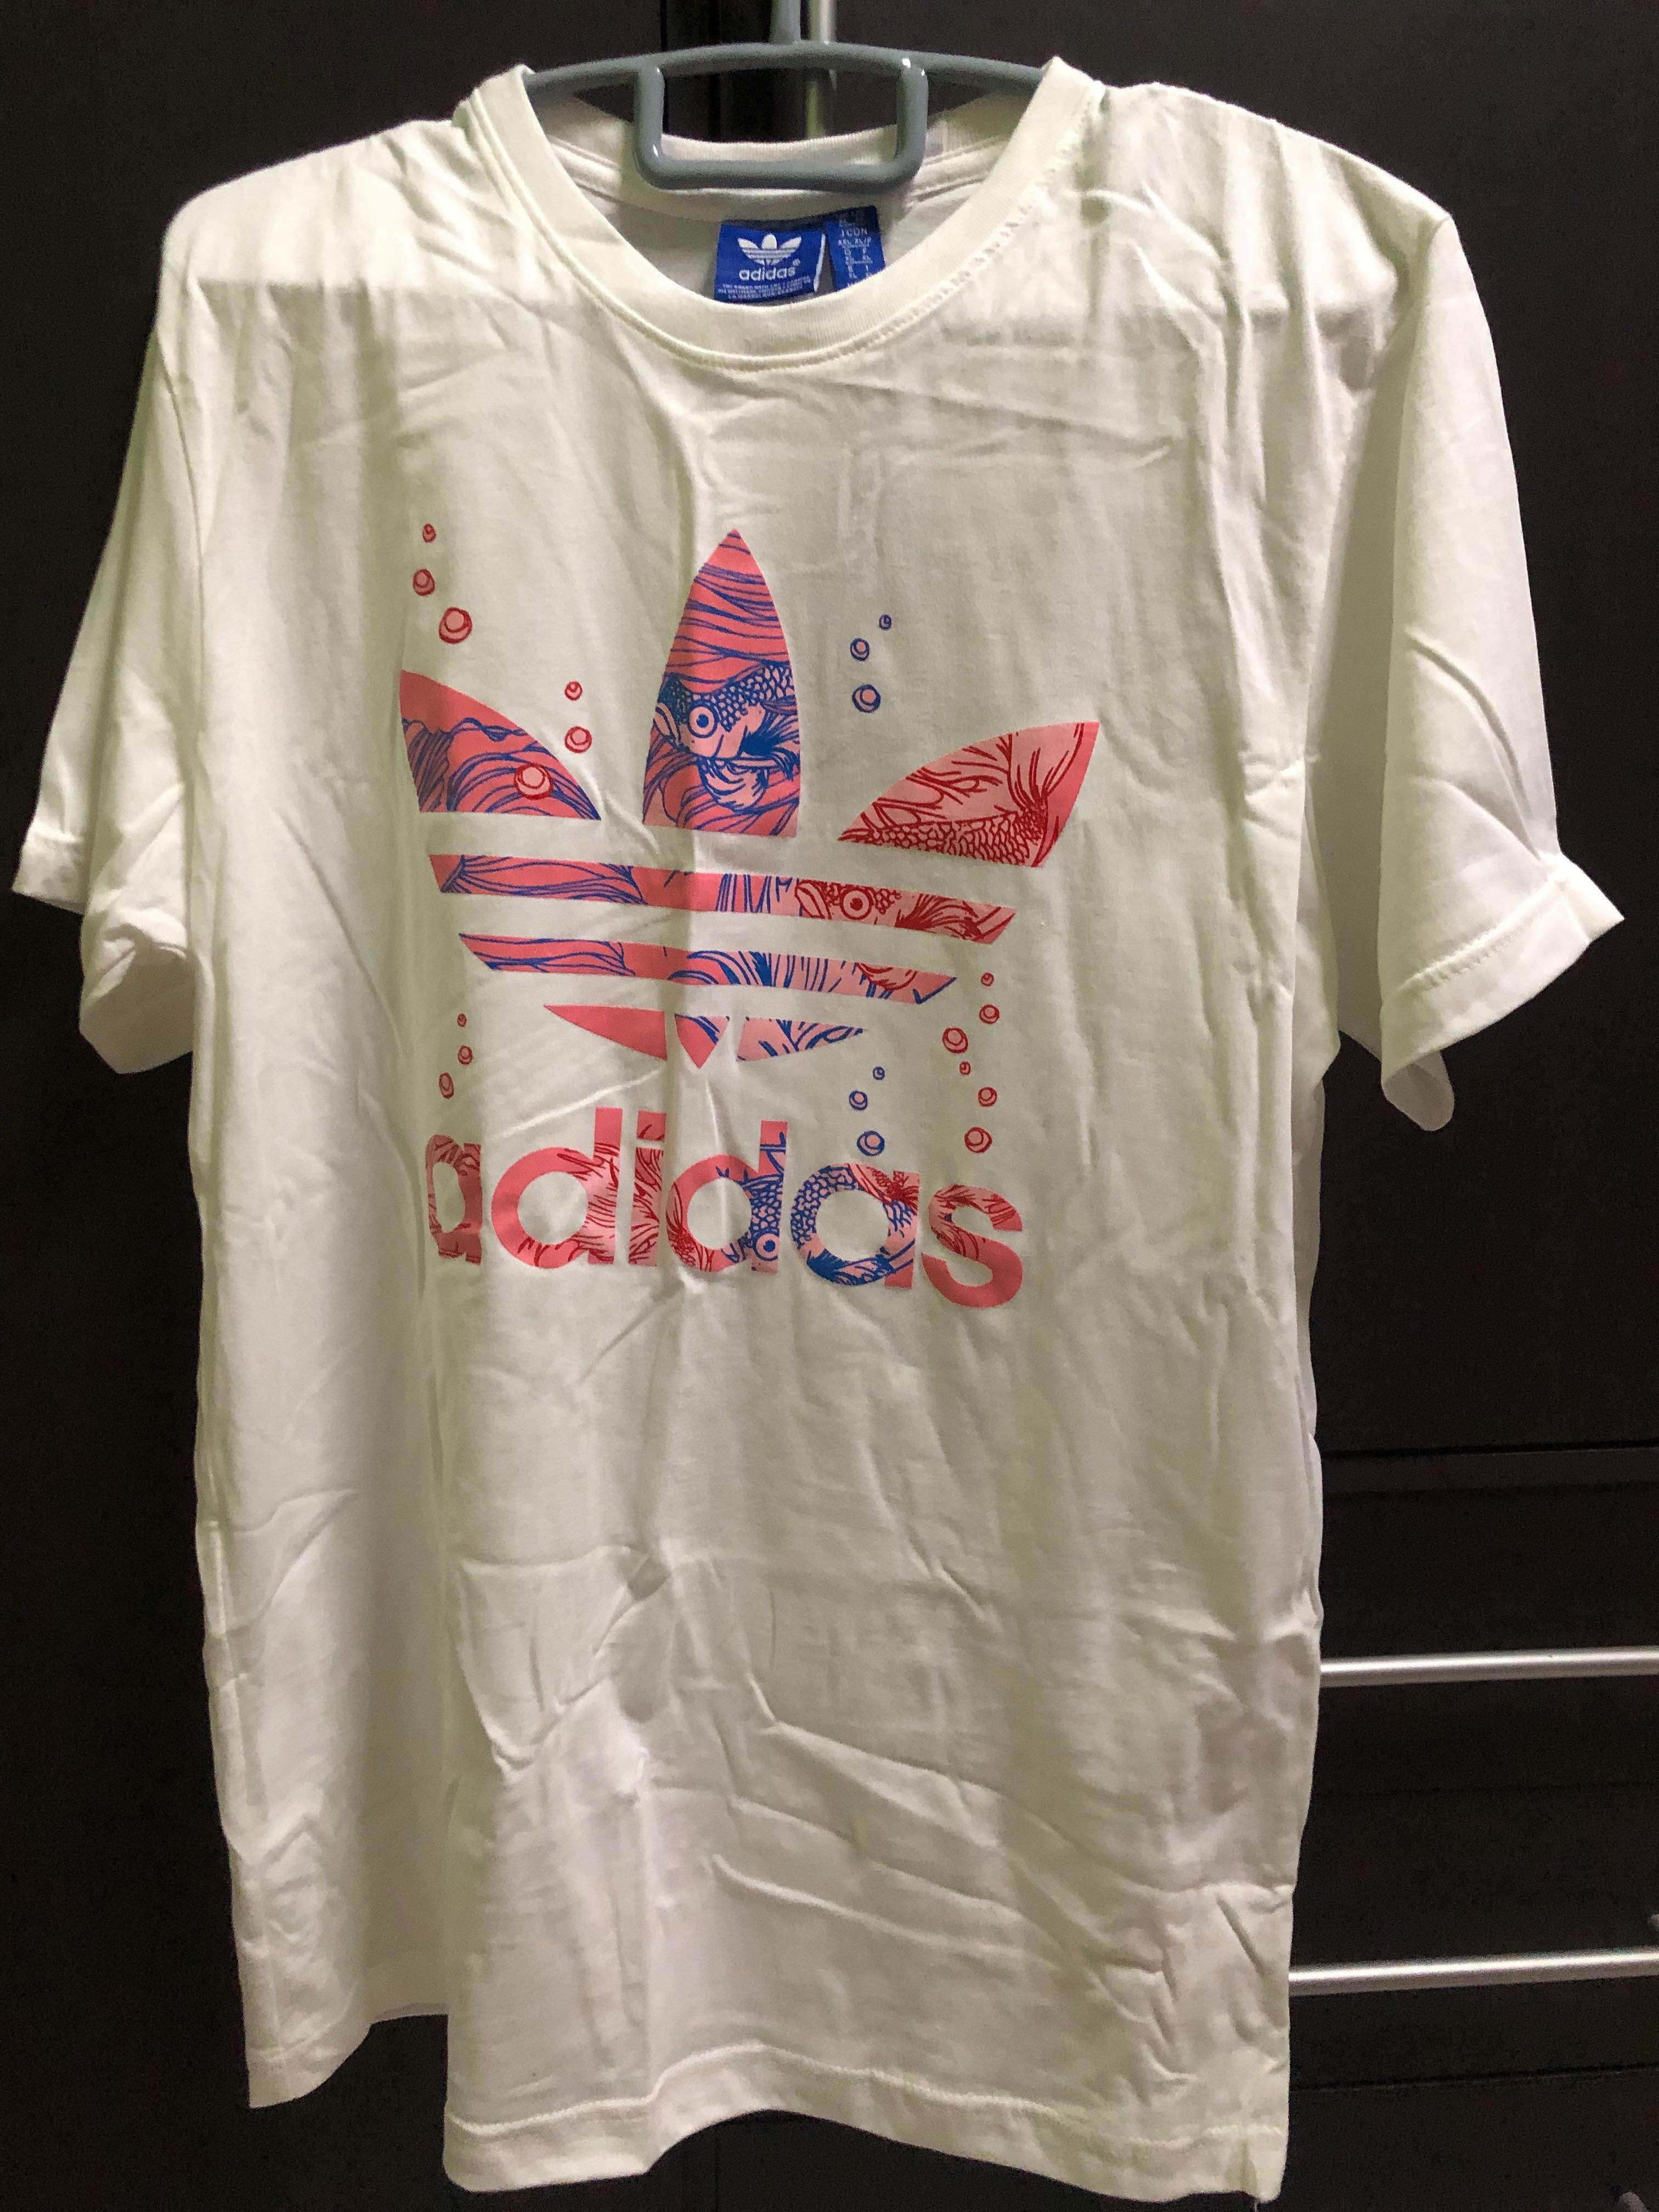 white adidas shirt with pink logo